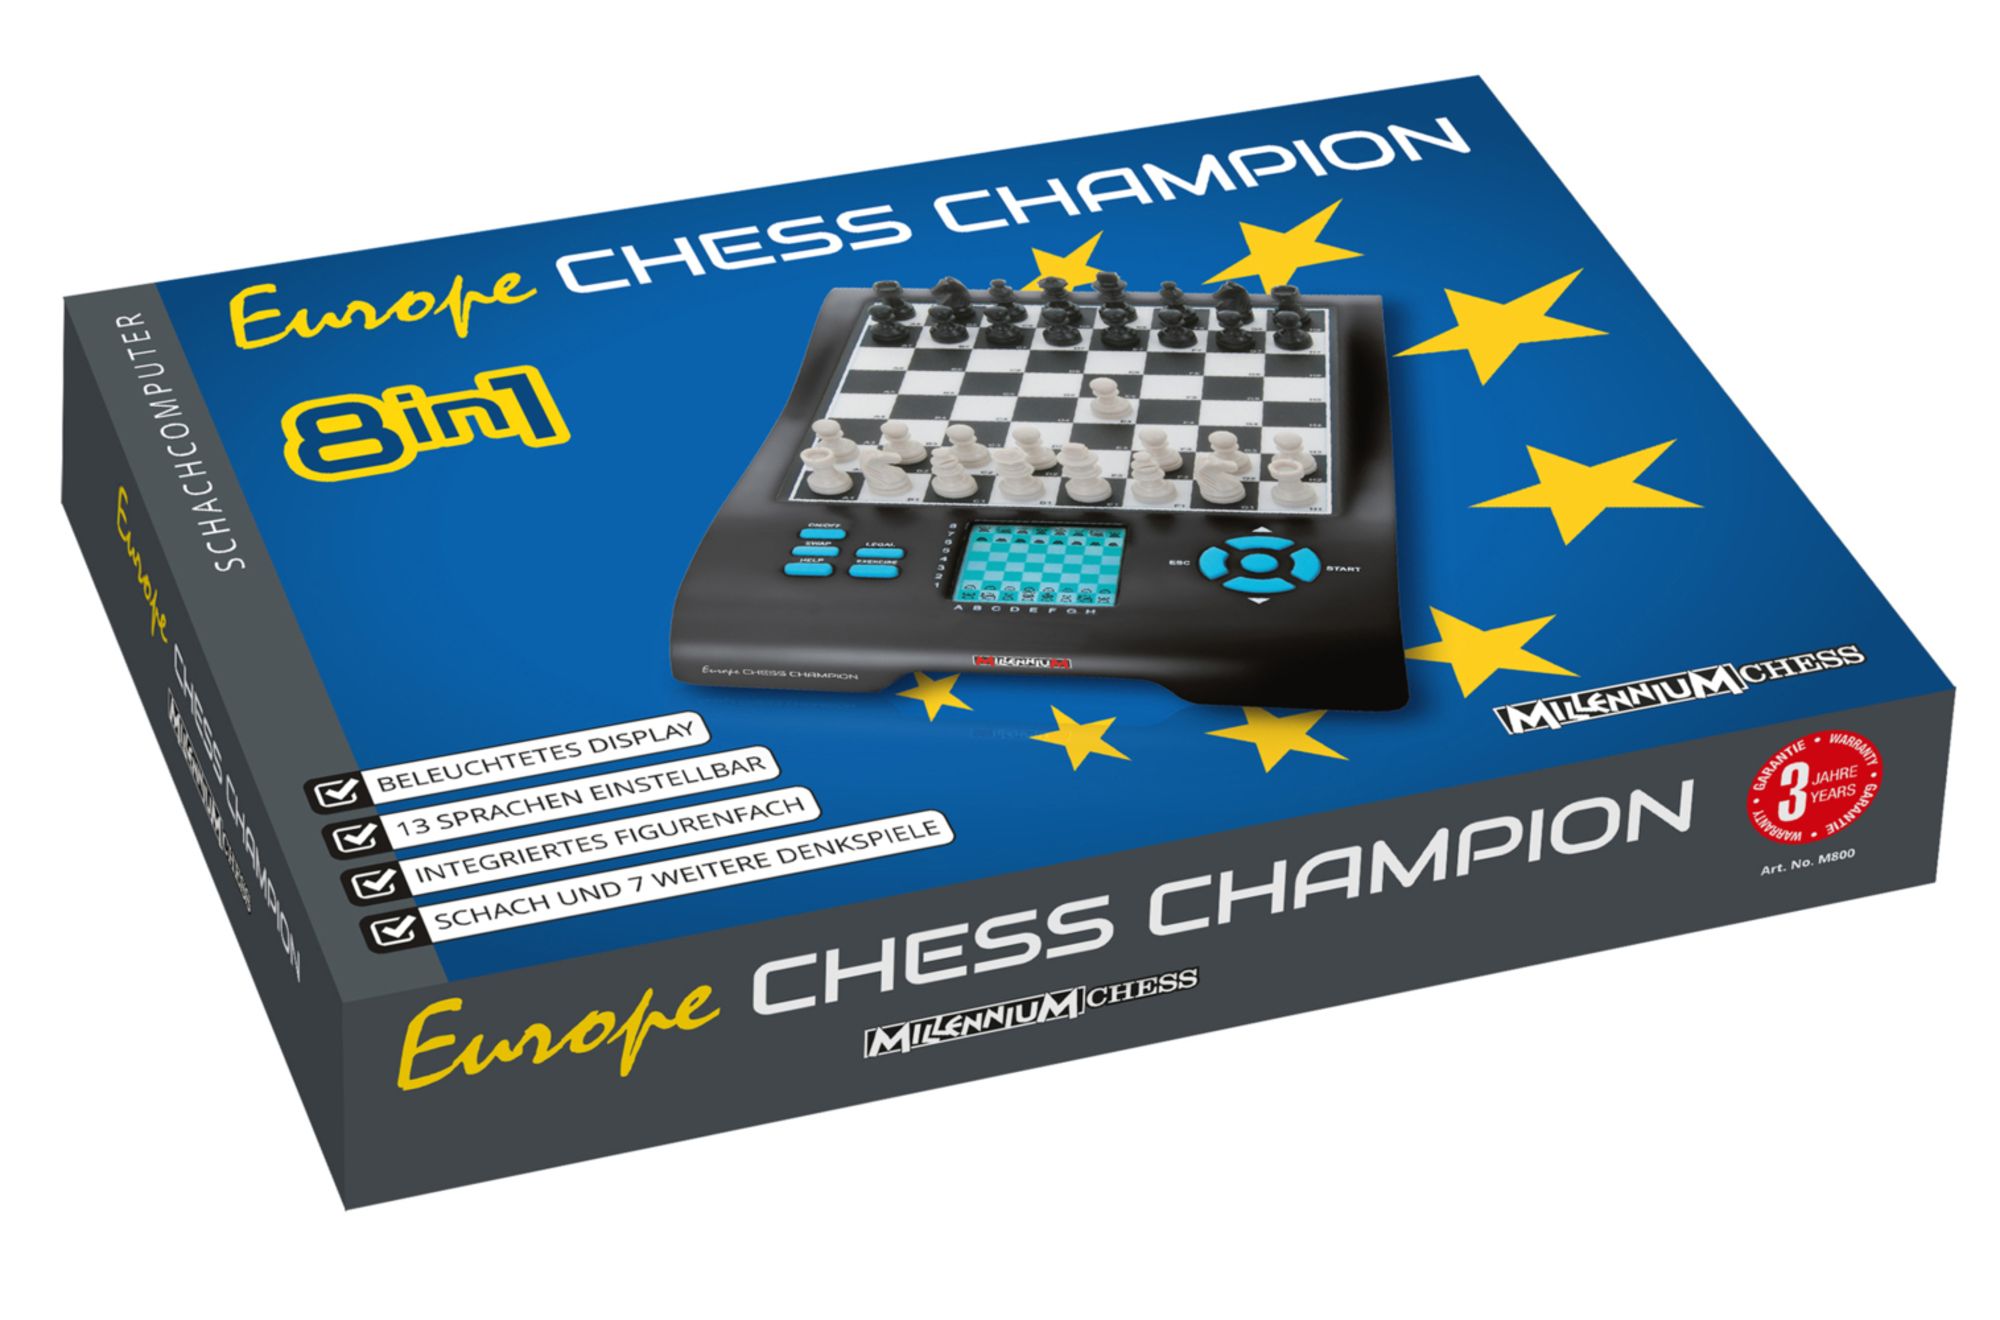 Europe Chess Master 8in1 Schachcompute für Elektronik kaufen